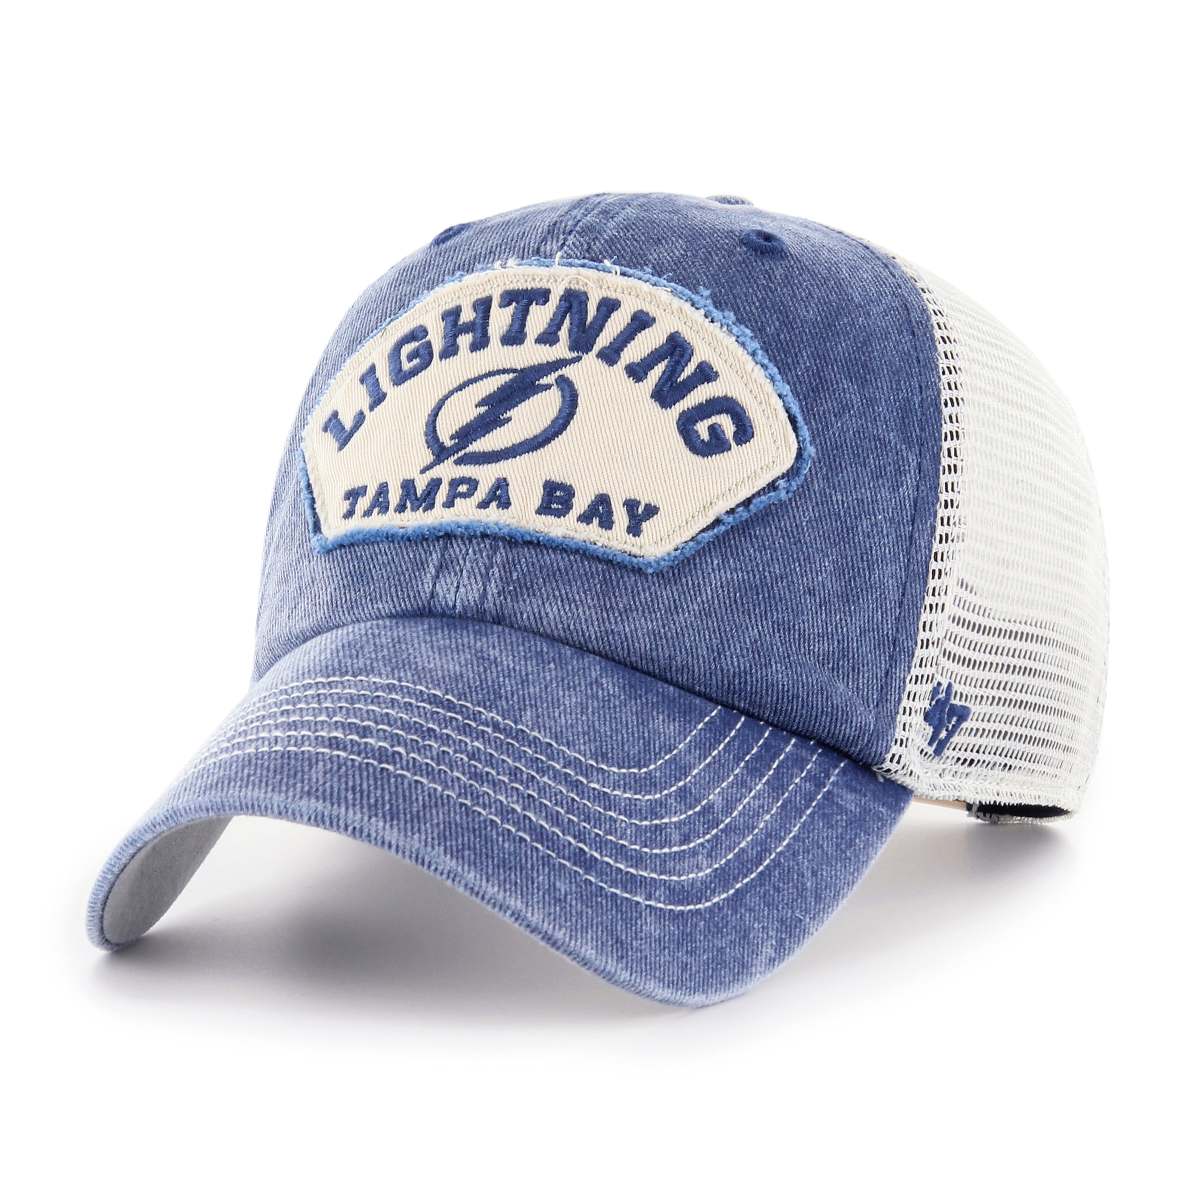 Tampa Bay Lightning '47 Denali Adjustable Mesh Back Pigment Dyed Clean Up Hat